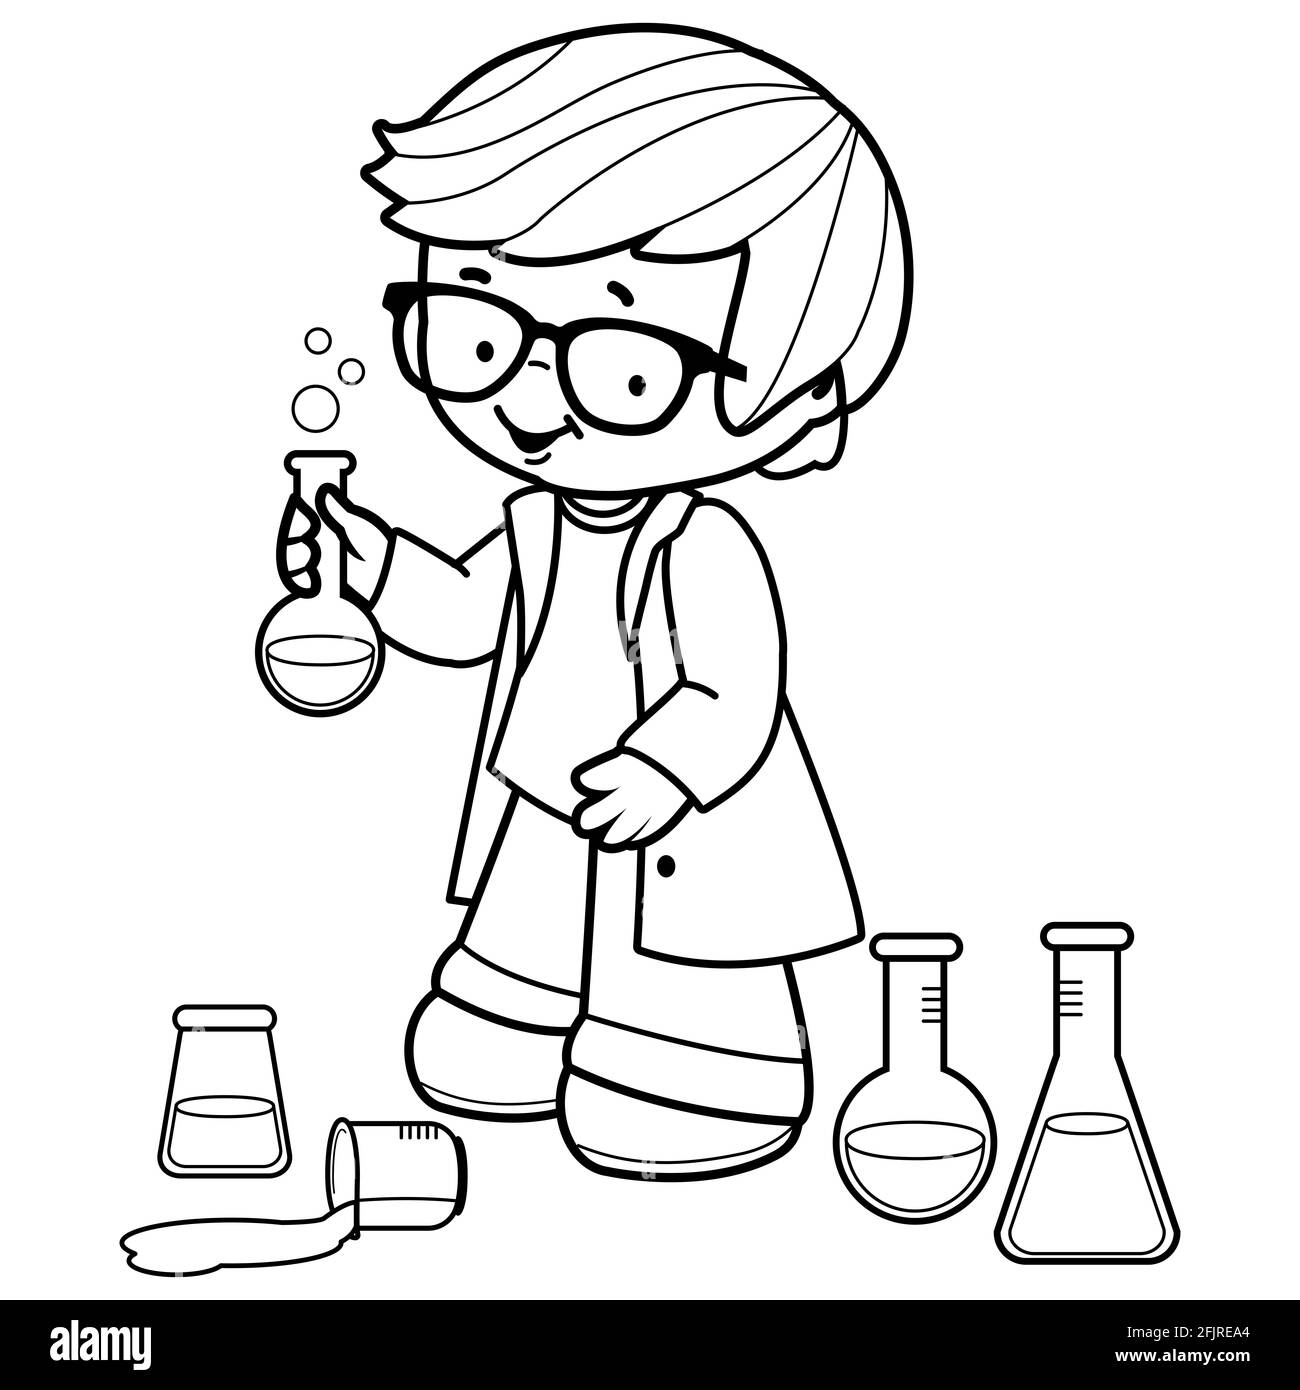 Garçon utilisant des tubes de test de chimie pour des expériences scientifiques. Illustration en noir et blanc Banque D'Images